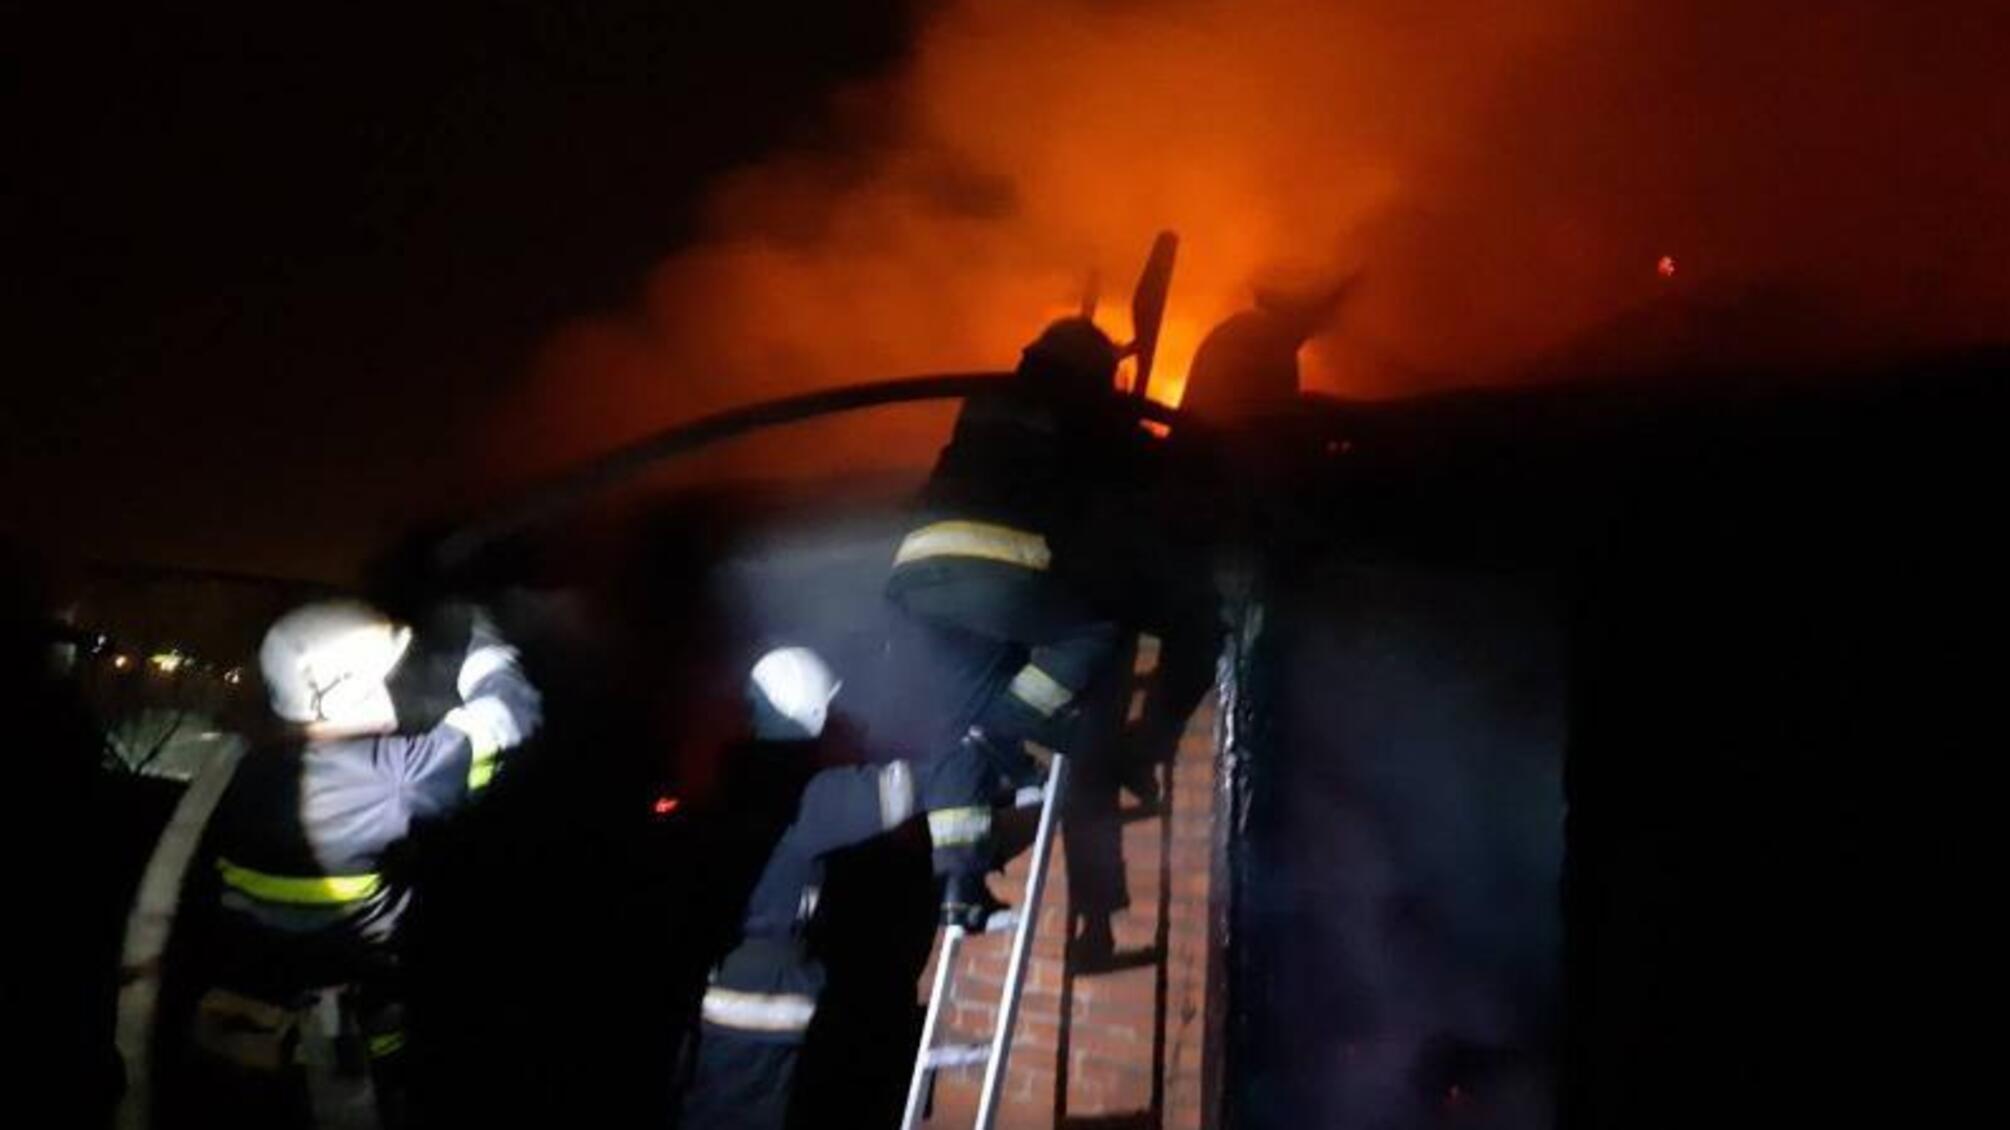 Харківська область: під час пожежі у приватному будинку його мешканка отримала опіки